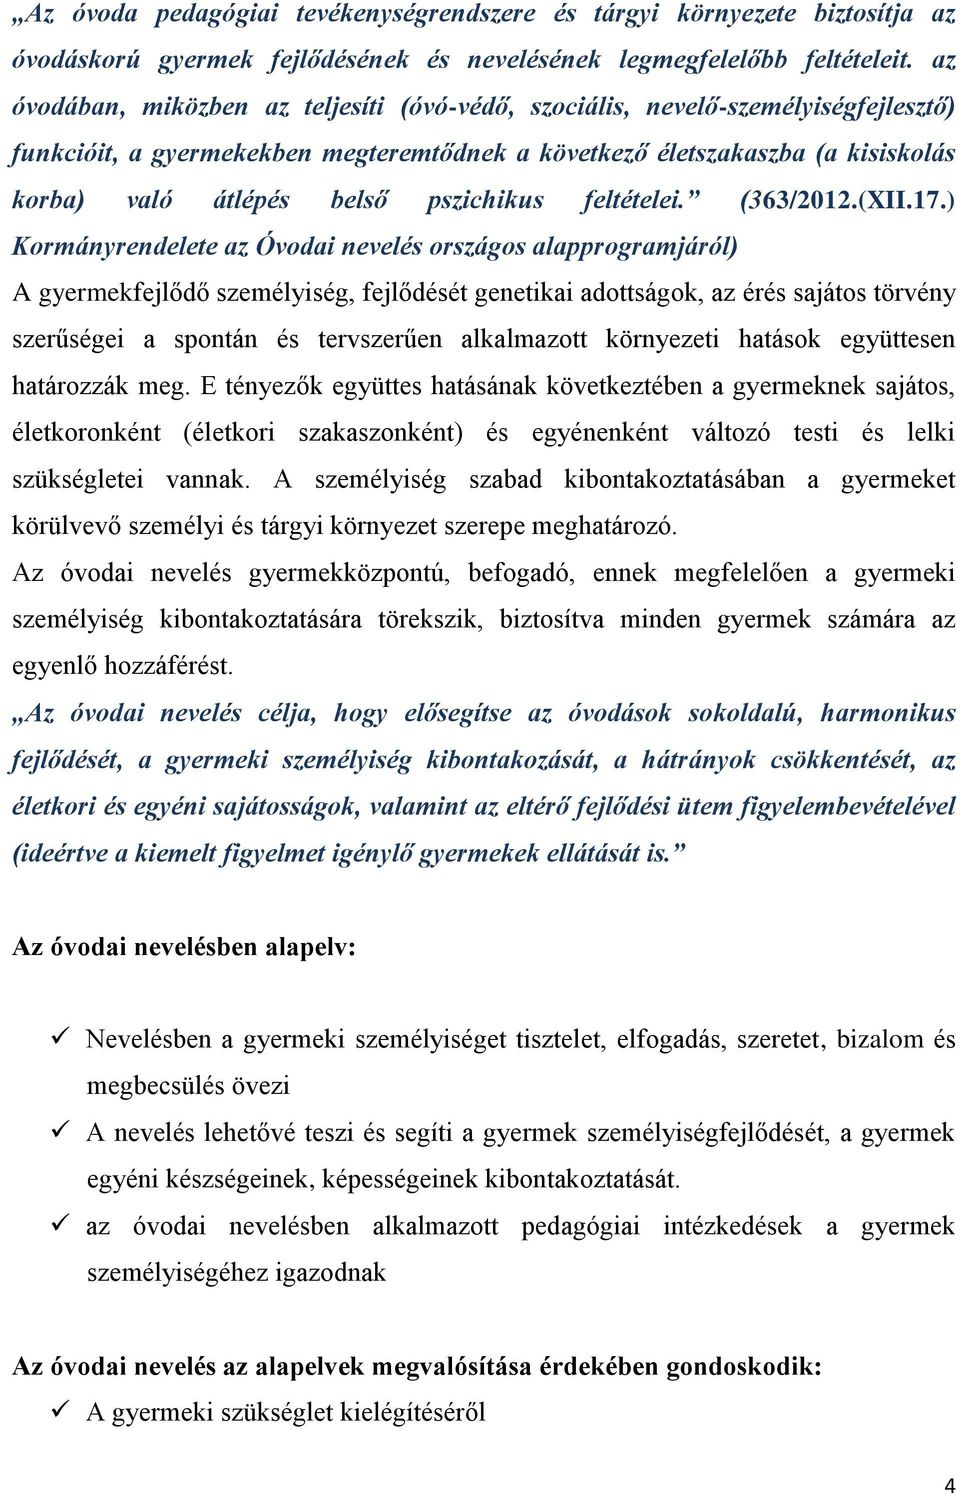 pszichikus feltételei. (363/2012.(XII.17.